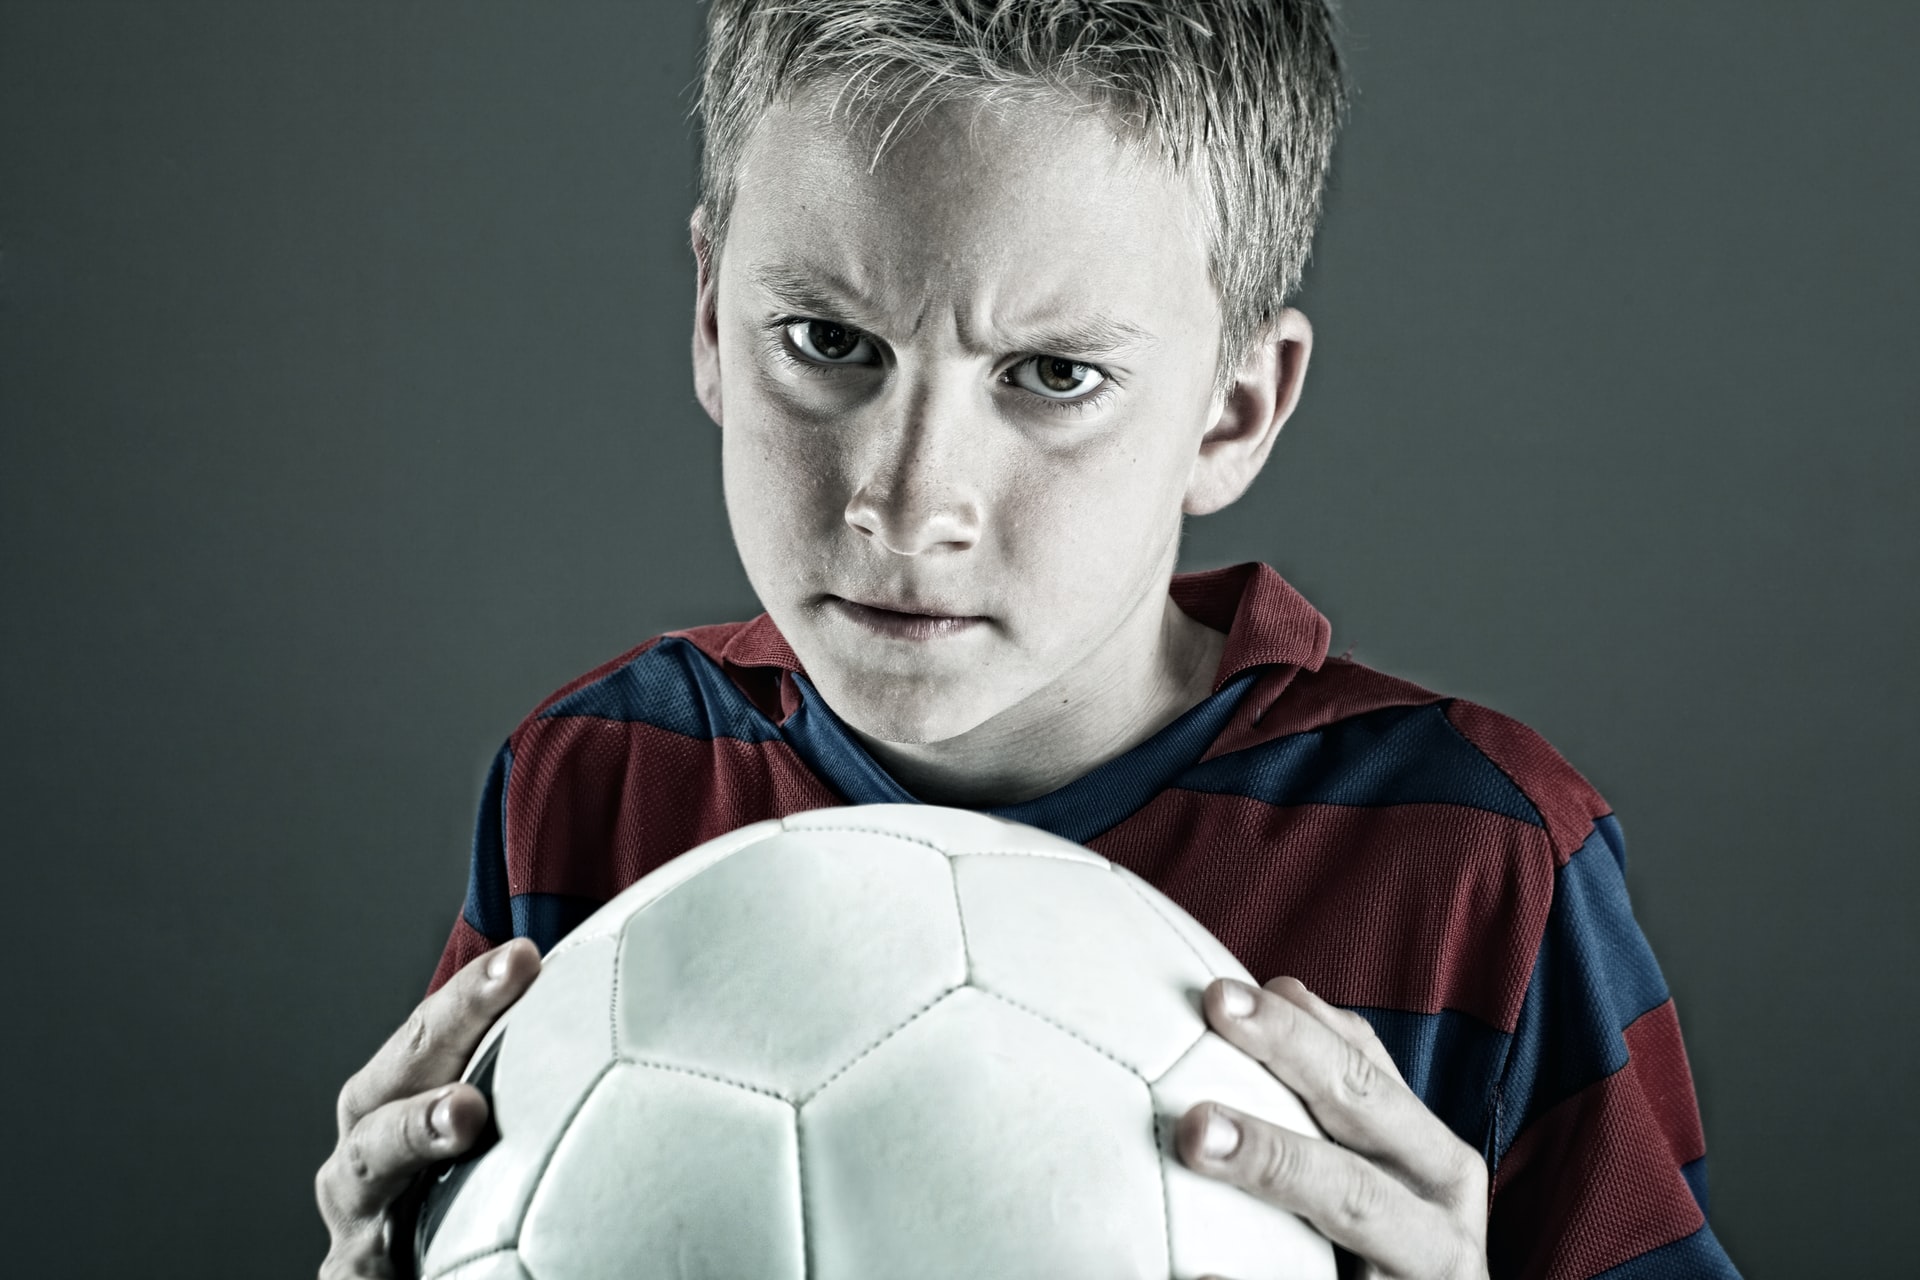 Futbol topunu sıkı sıkı tutan çocuk sinirli bakışlar atıyor.